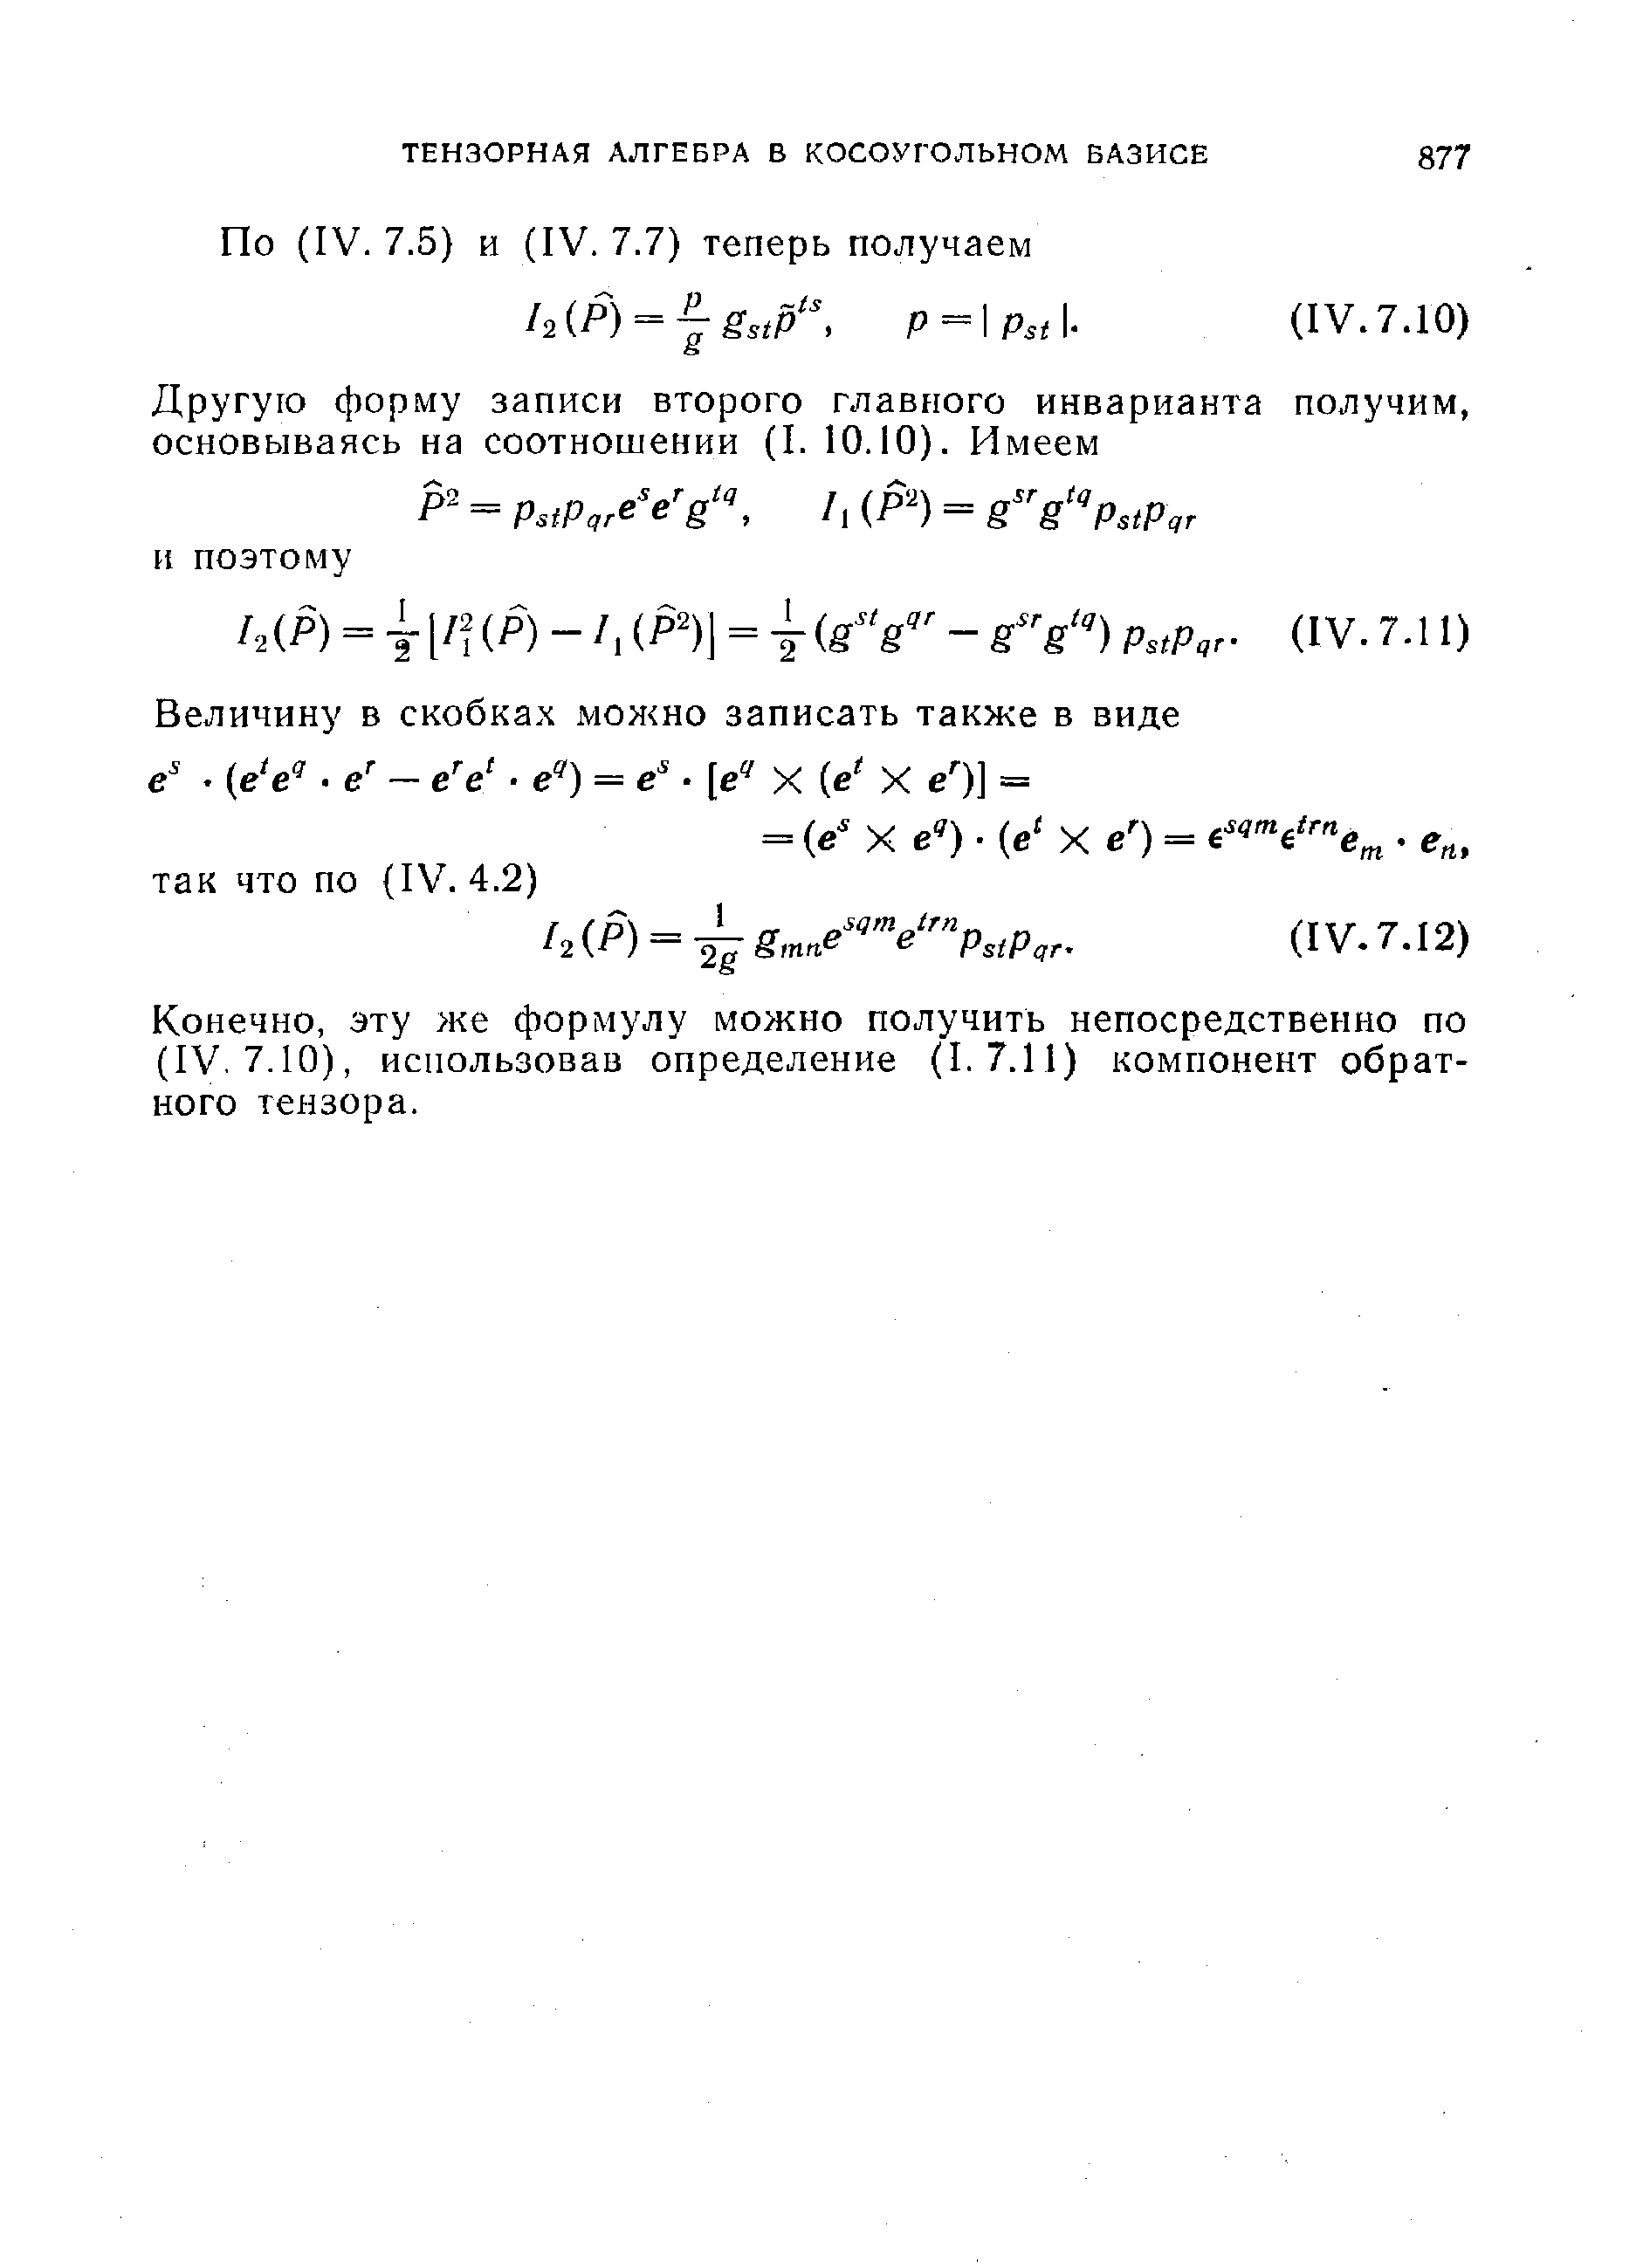 Конечно, эту же формулу можно получить непосредственно по (IV. 7.10), использовав определение (1.7.11) компонент обратного тензора.
